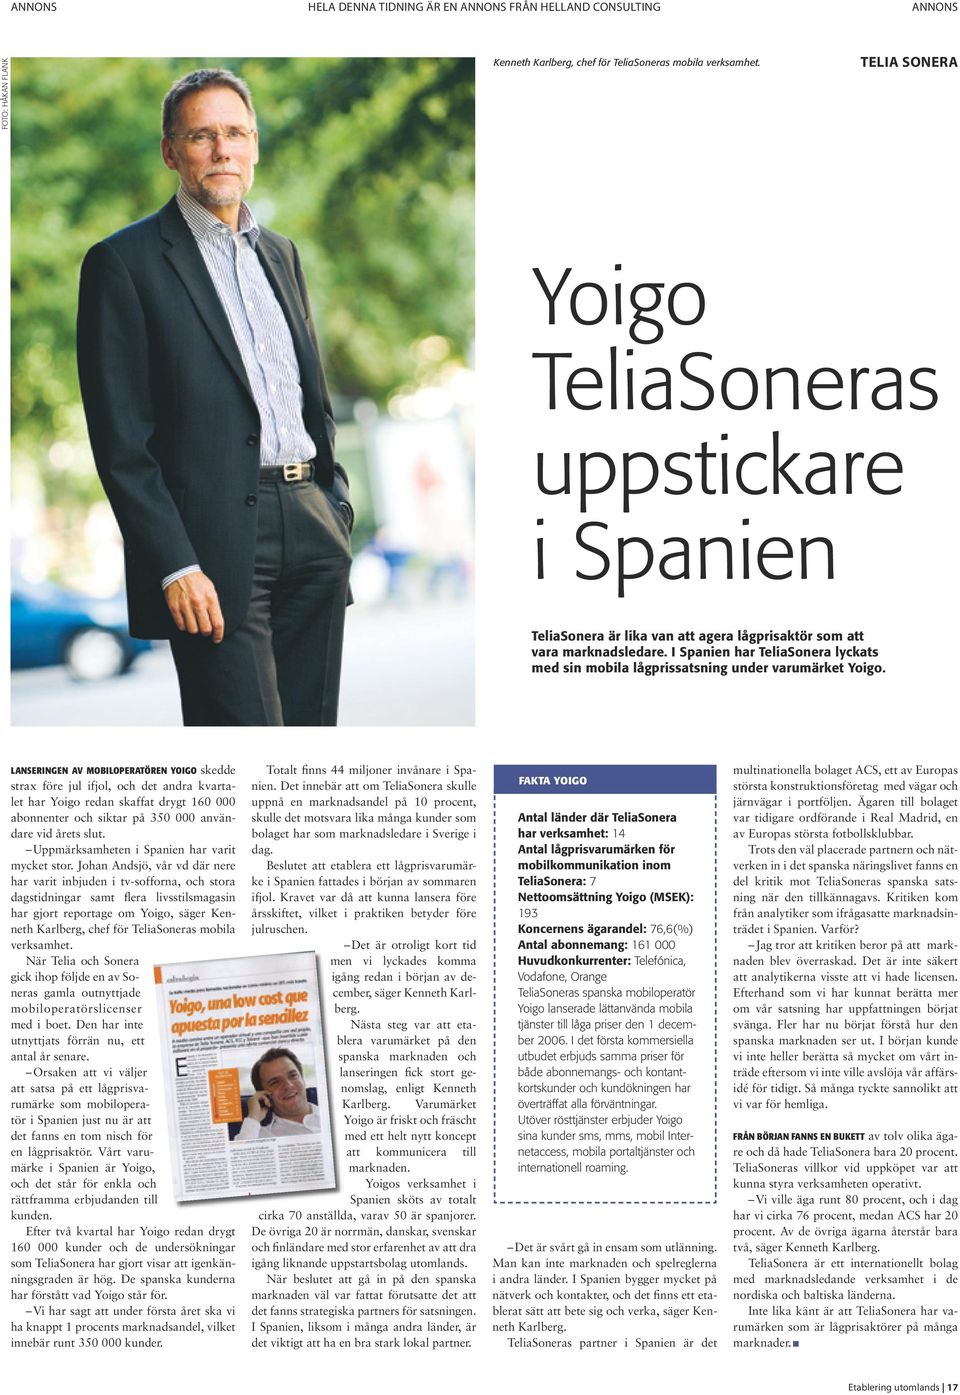 I Spanien har TeliaSonera lyckats med sin mobila lågprissatsning under varumärket Yoigo.